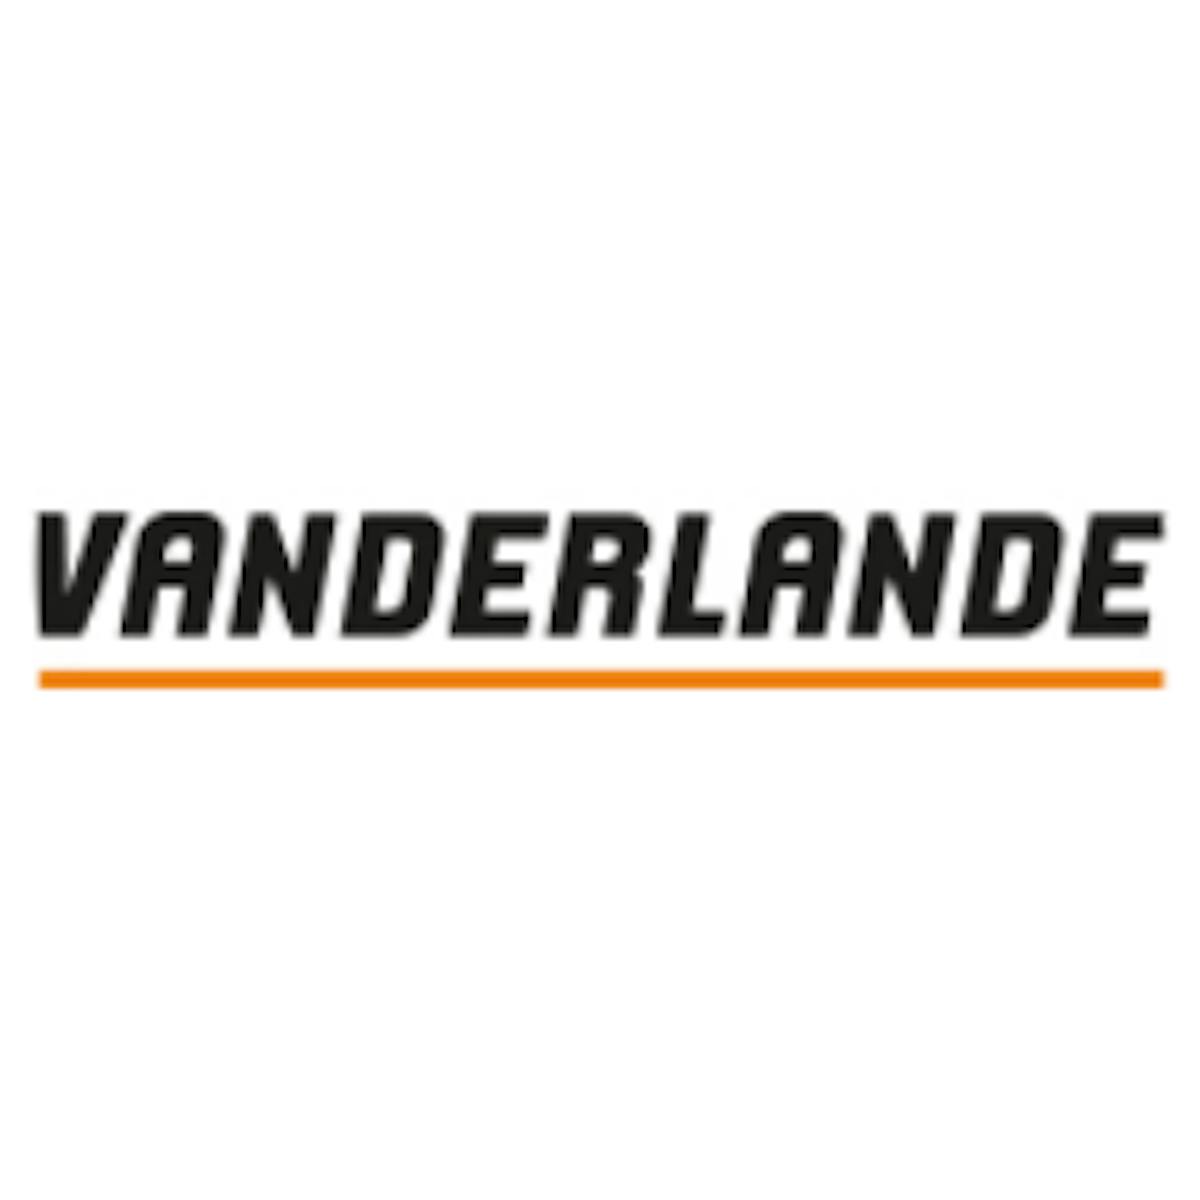 vanderlande logo 56ce1e1918ea2